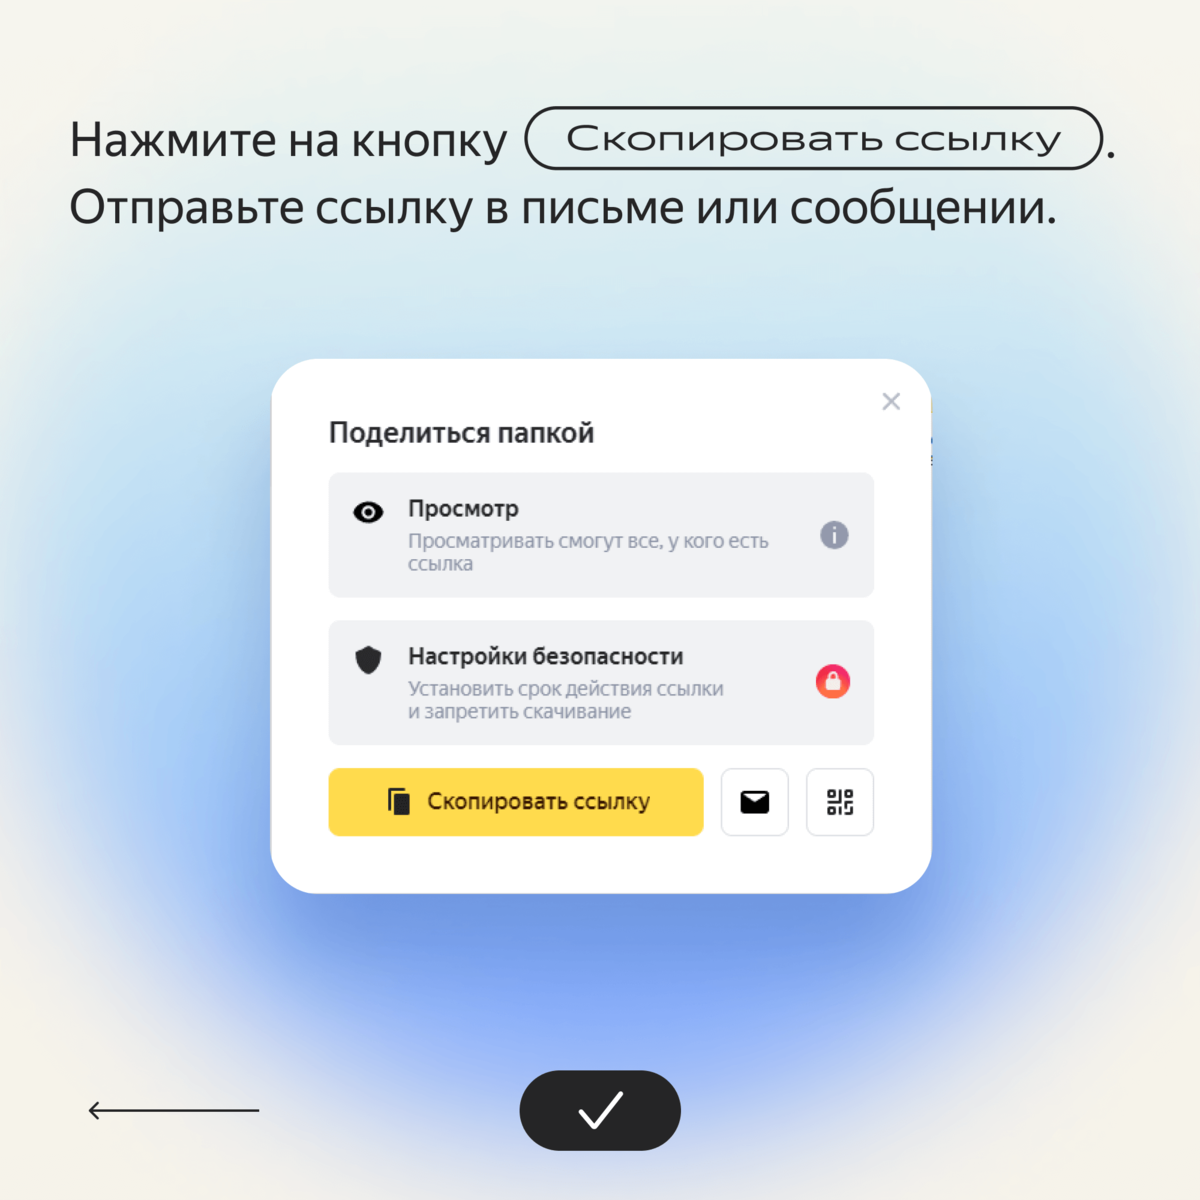 Как массово создать ссылки на Яндекс.Диск?